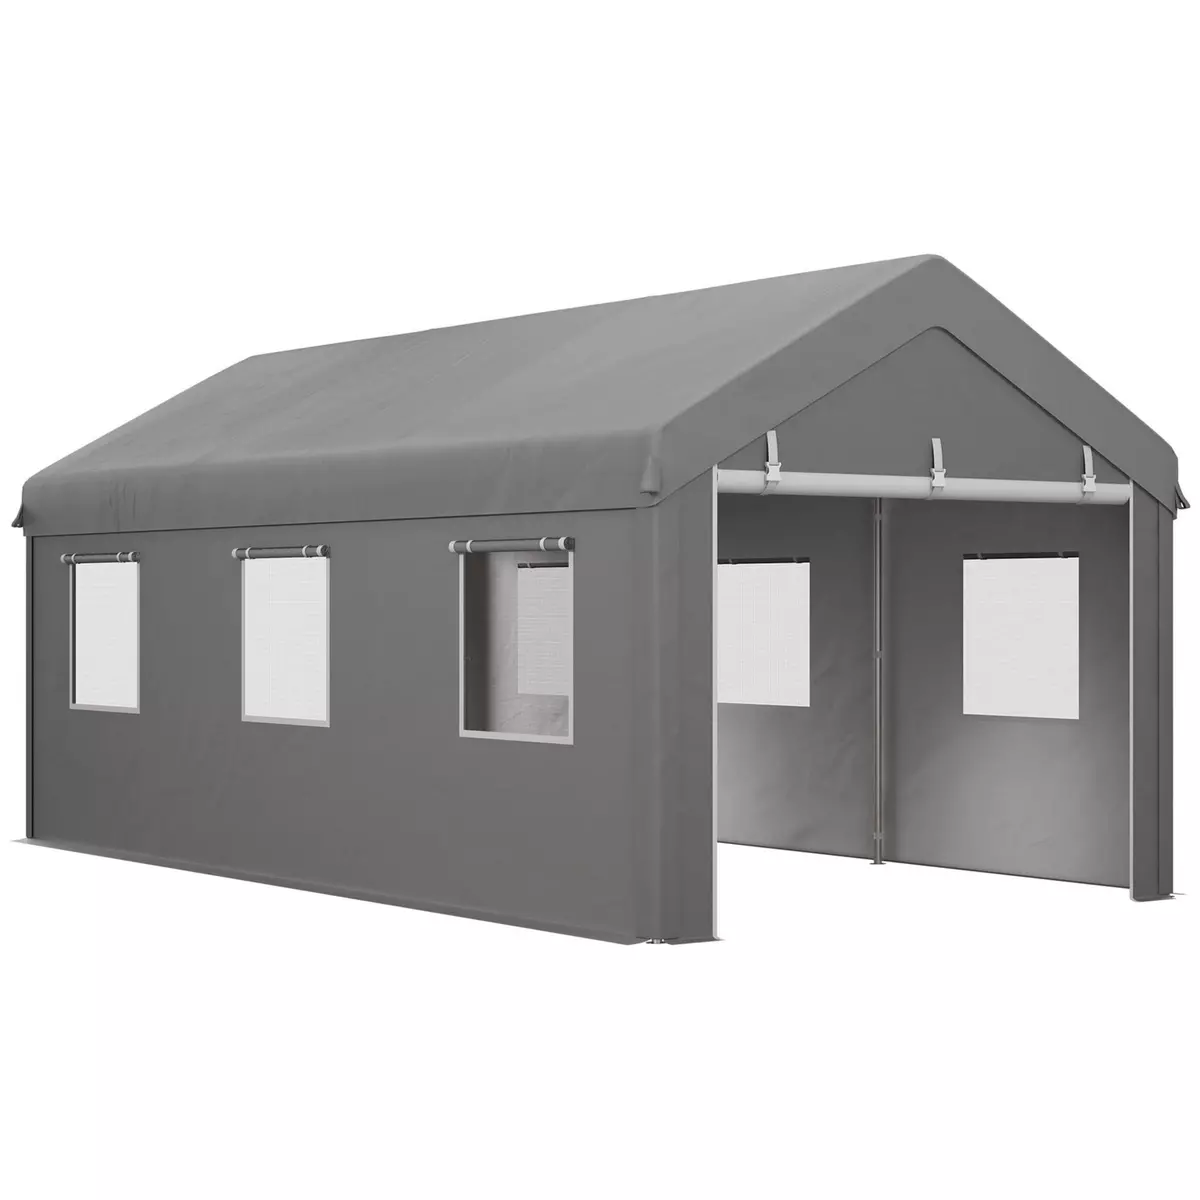 OUTSUNNY Tente garage carport dim. 6L x 2,95l x 2,78H m acier galvanisé PE haute densité 2 portes 6 fenêtres gris